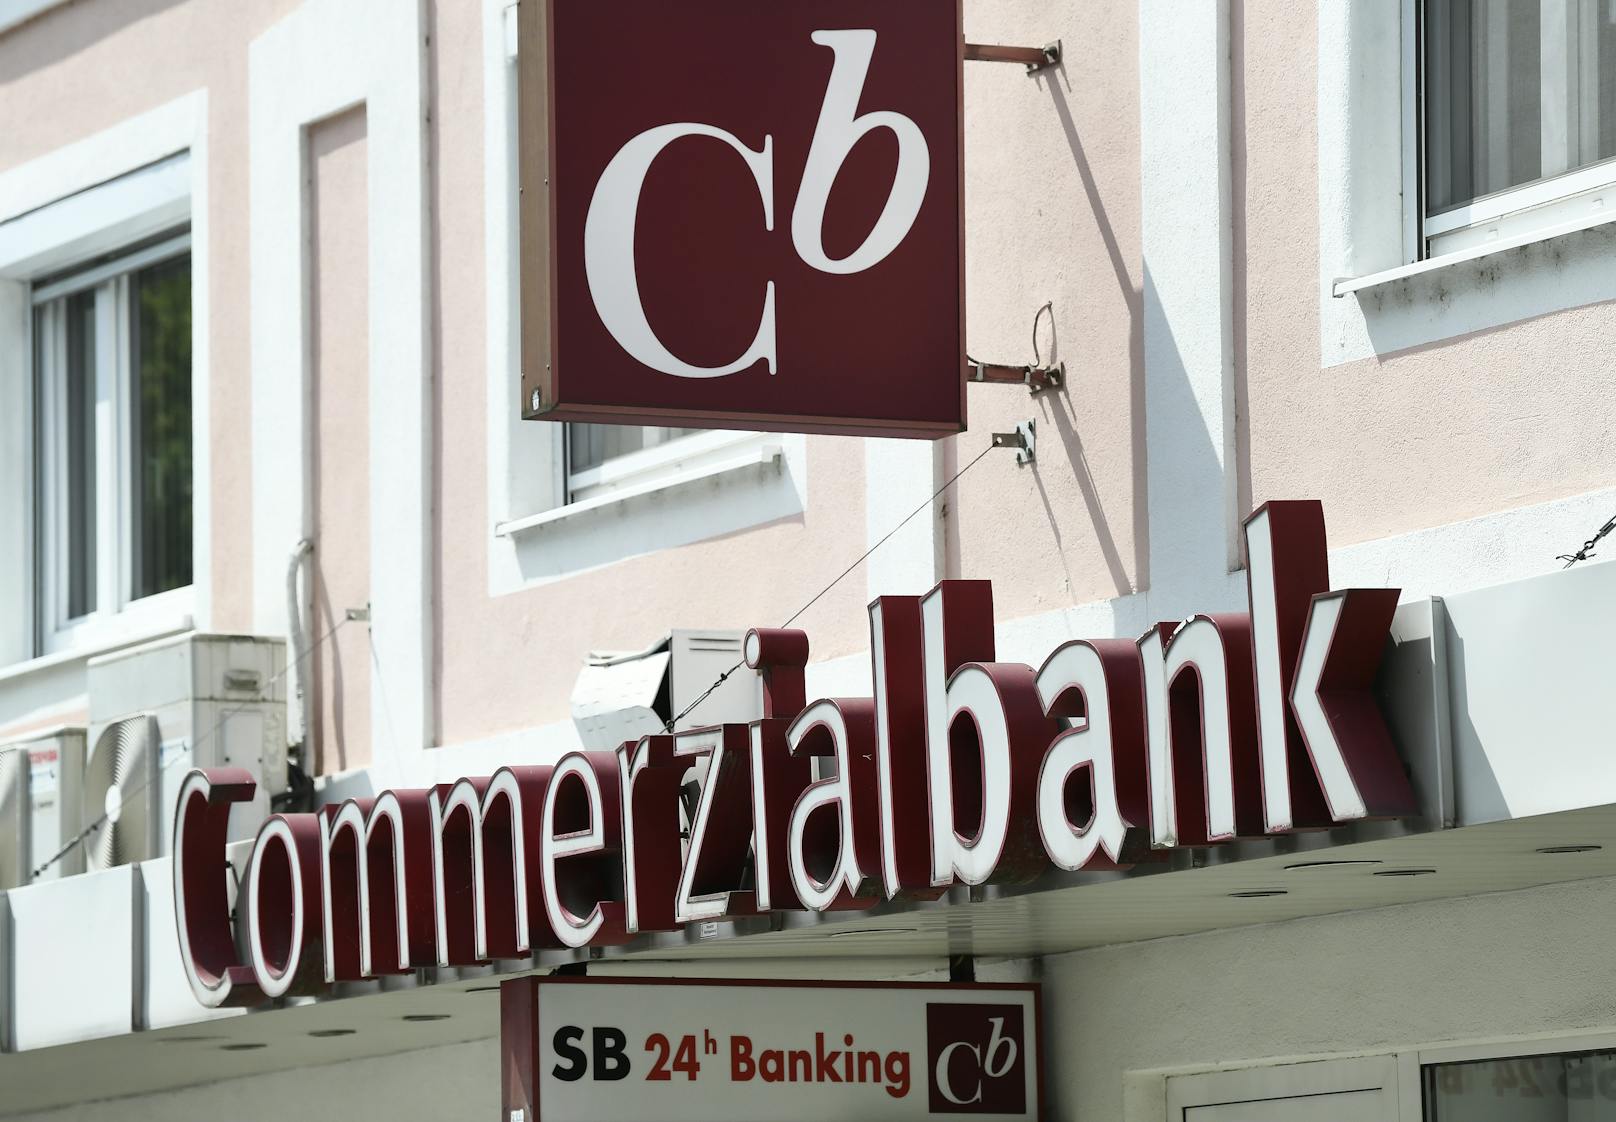 Mehr als 400 Millionen Euro an Spareinlagen und täglich fällige Gelder sollen in der Mattersburger Commerzialbank liegen. 